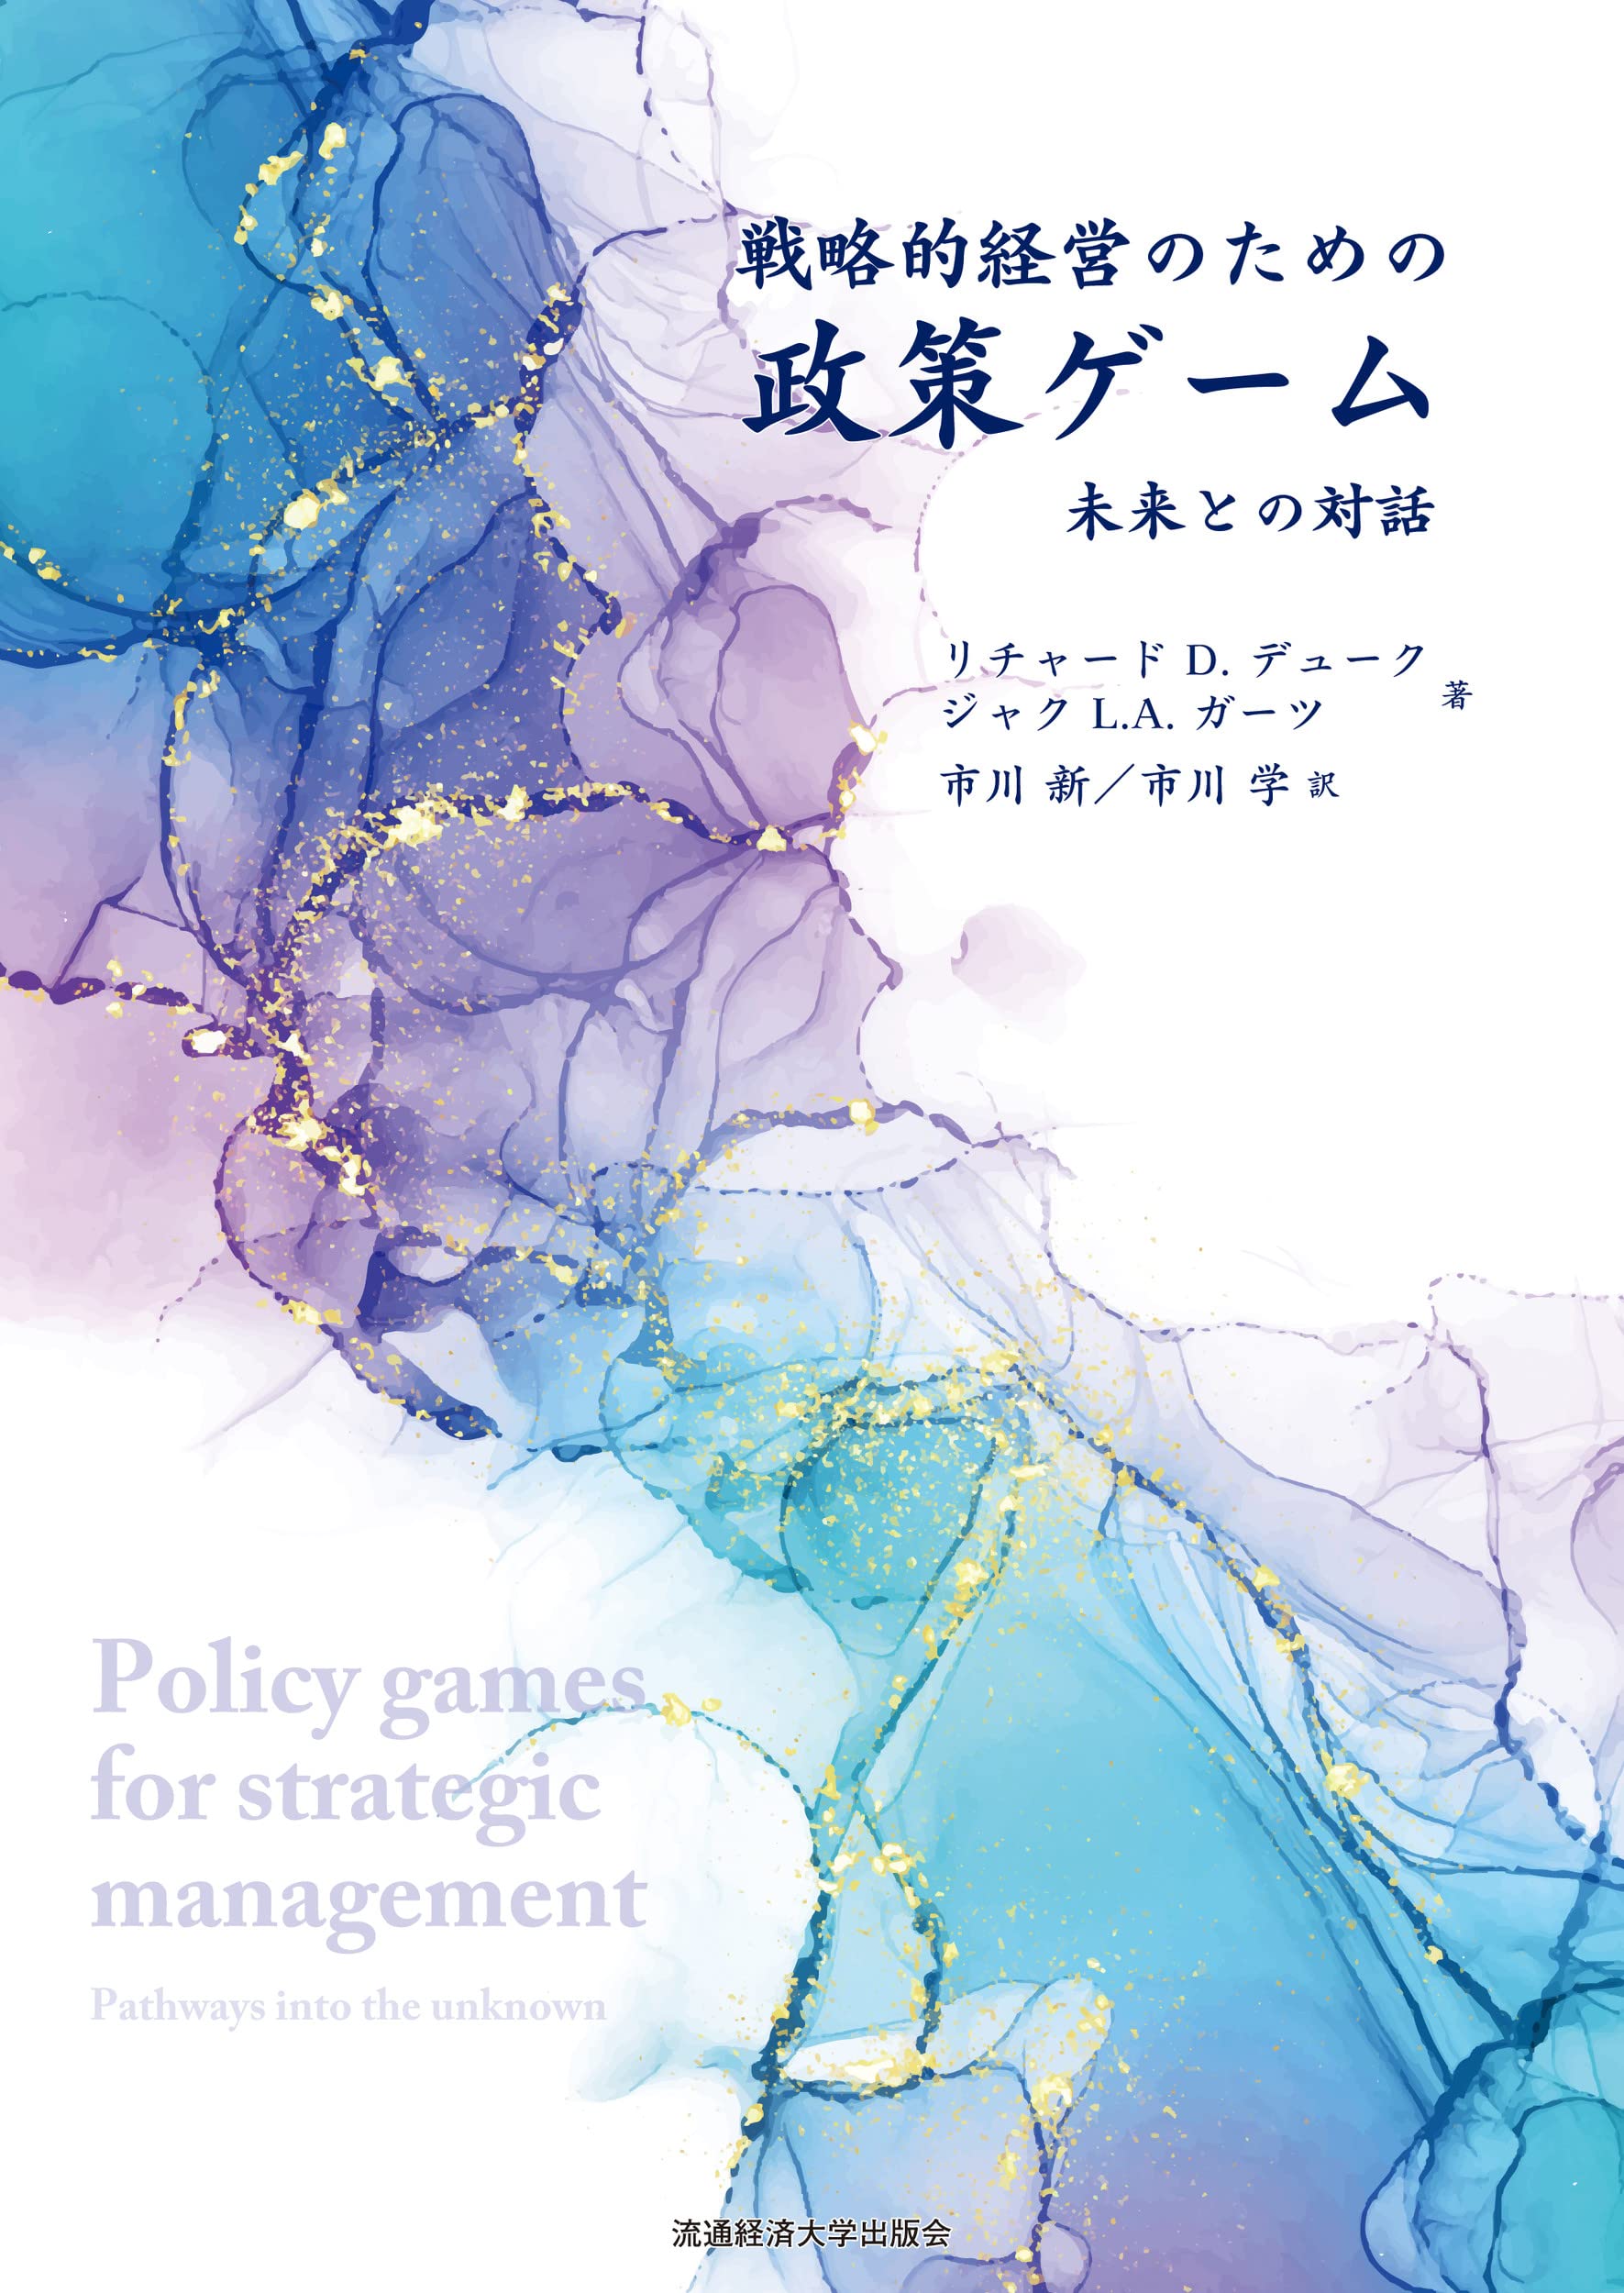 戰略的經營のための政策ゲ-ム: 未來との對話